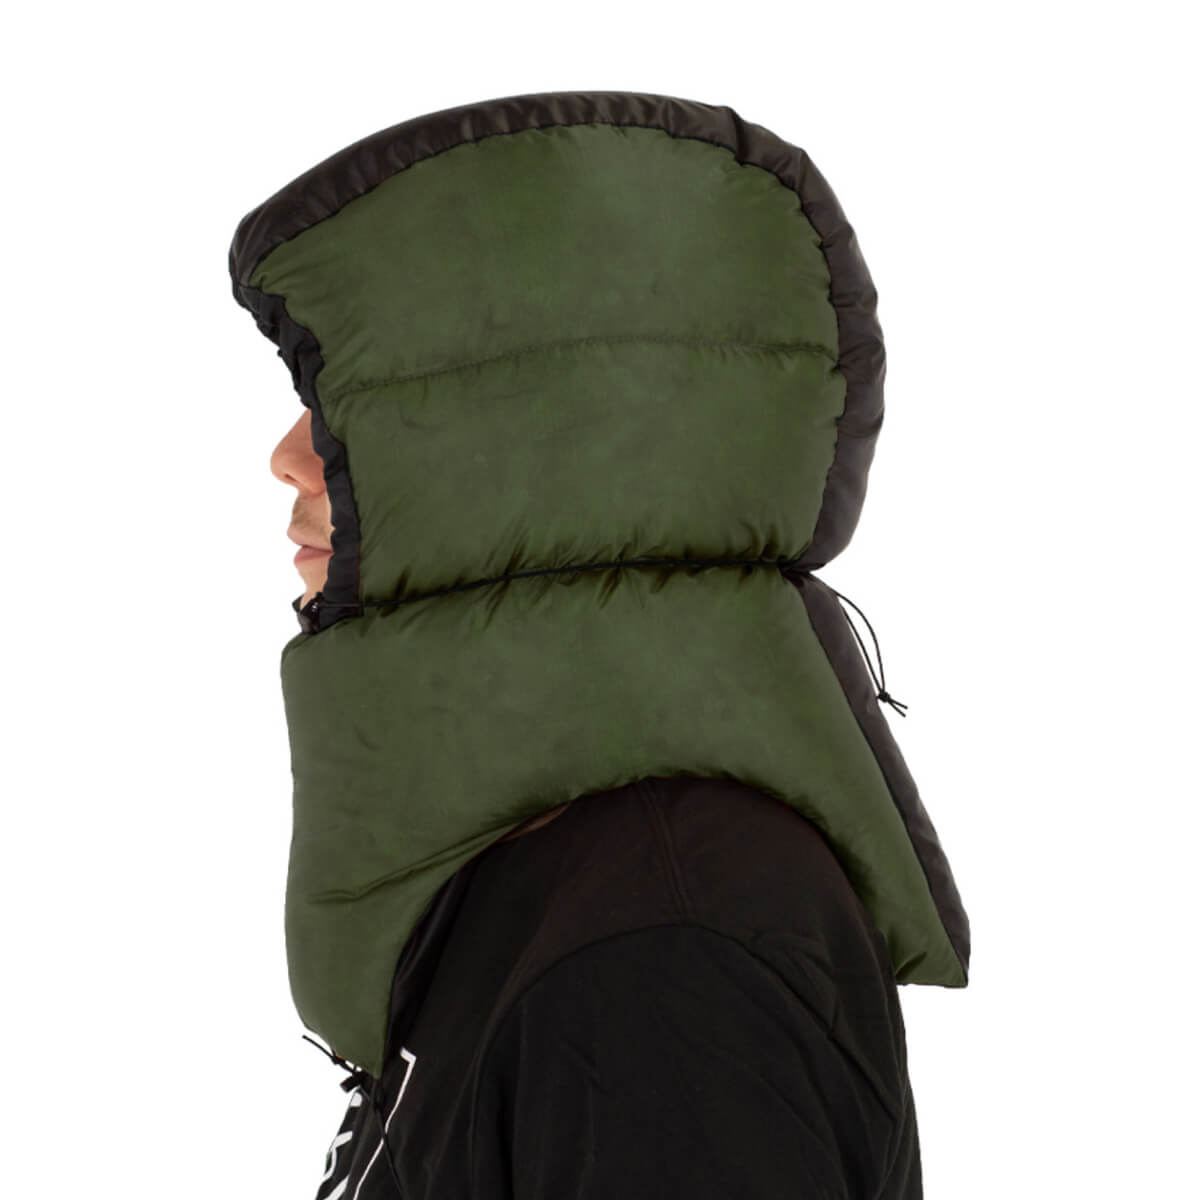 Hammock Gear Premium Down Hood warmest winter backpacking gear